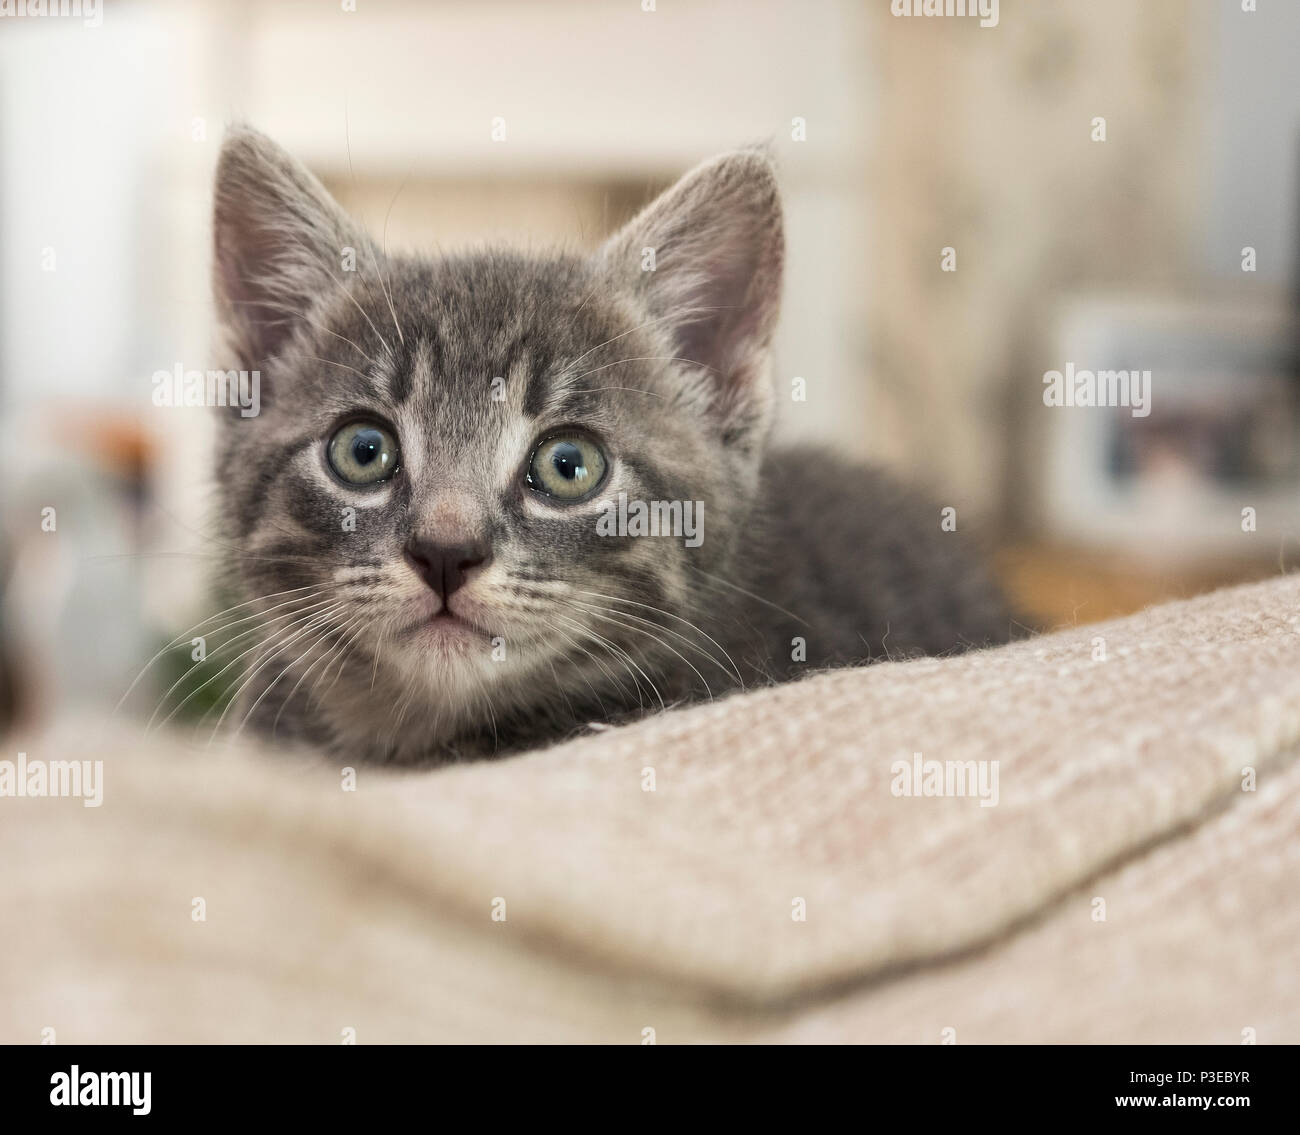 Small grey alert kitten Stock Photo